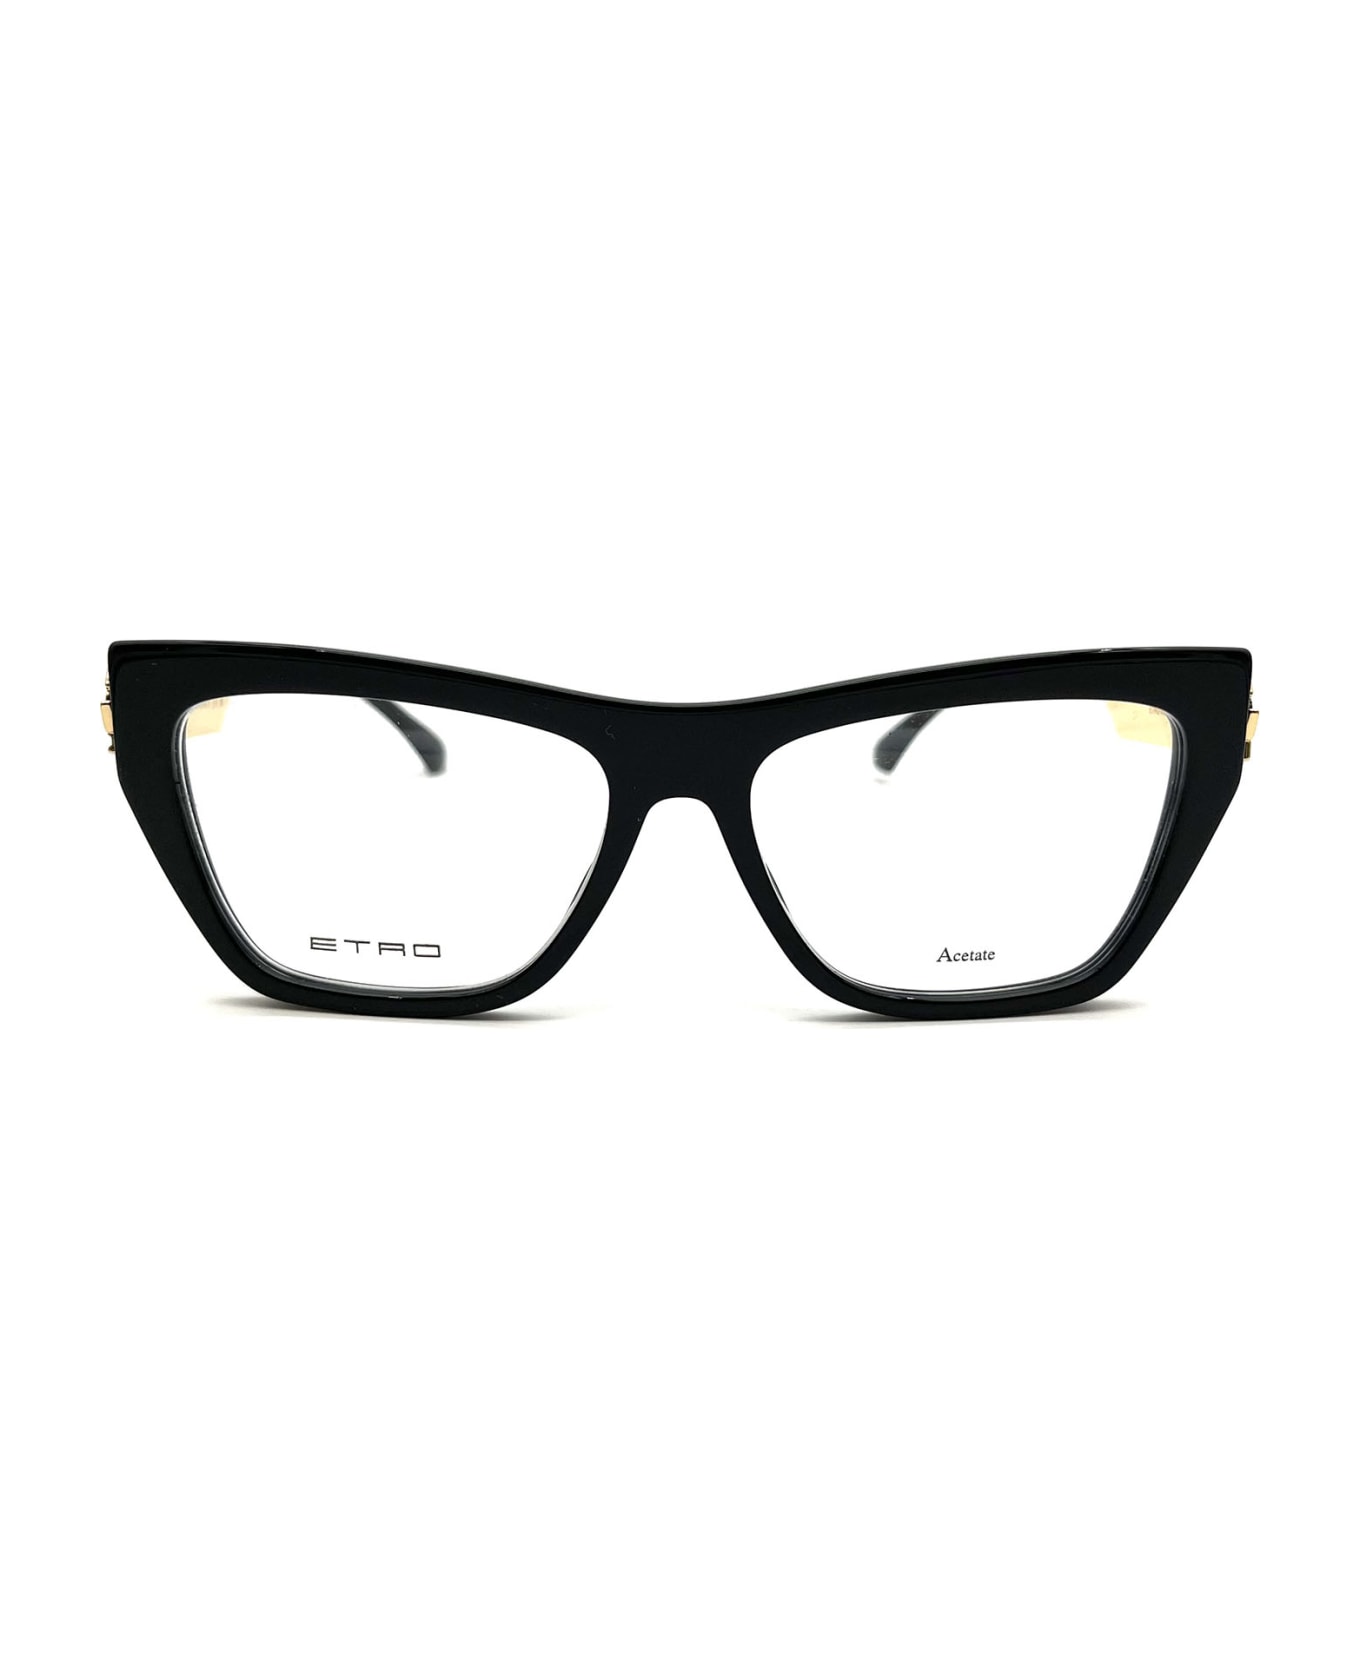 Etro 0029 Eyewear - Black